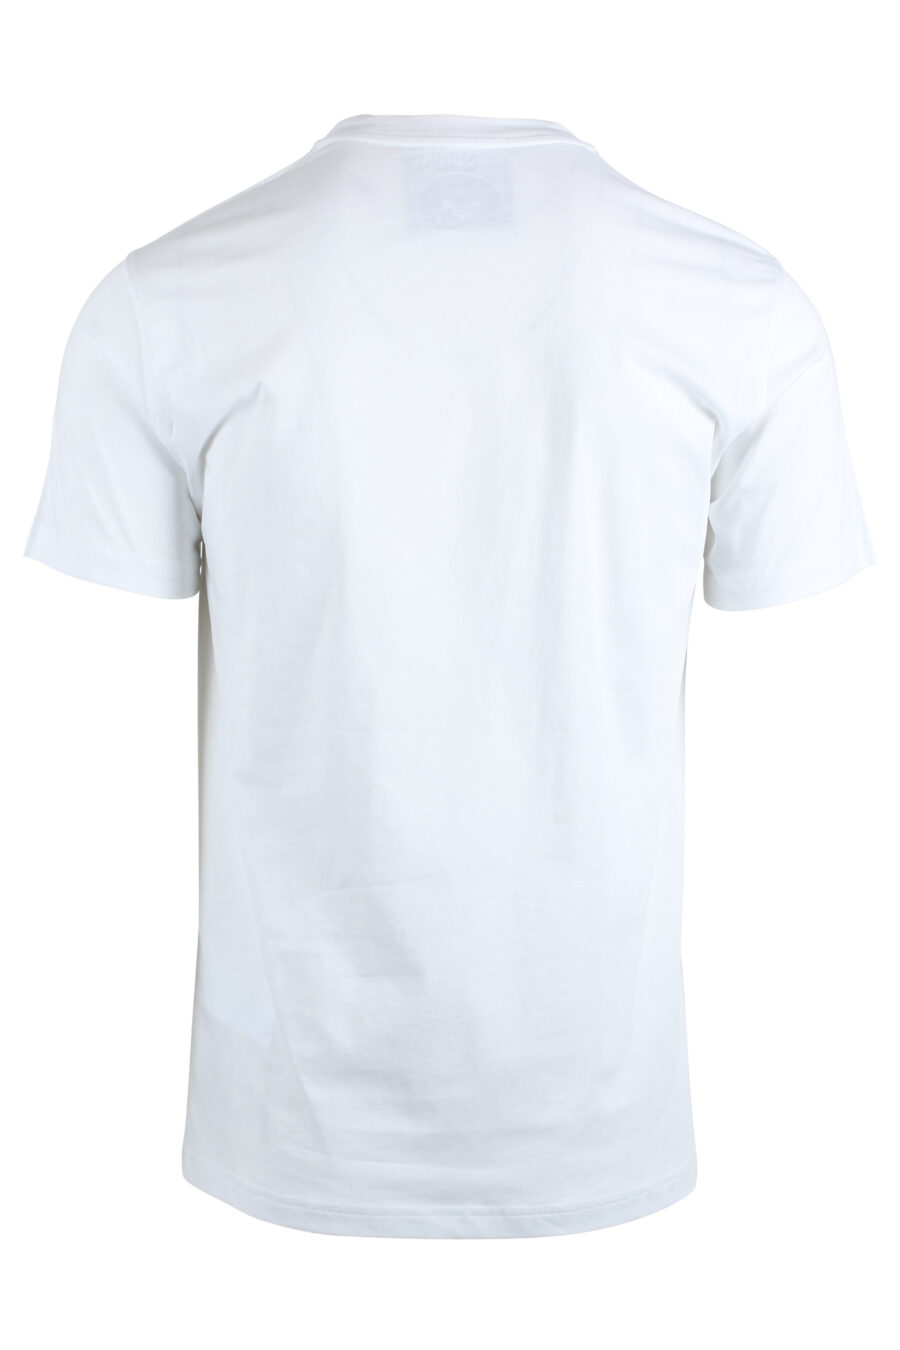 Weißes T-Shirt mit Maxilogo "Das ist kein Moschino-Spielzeug" - IMG 4772